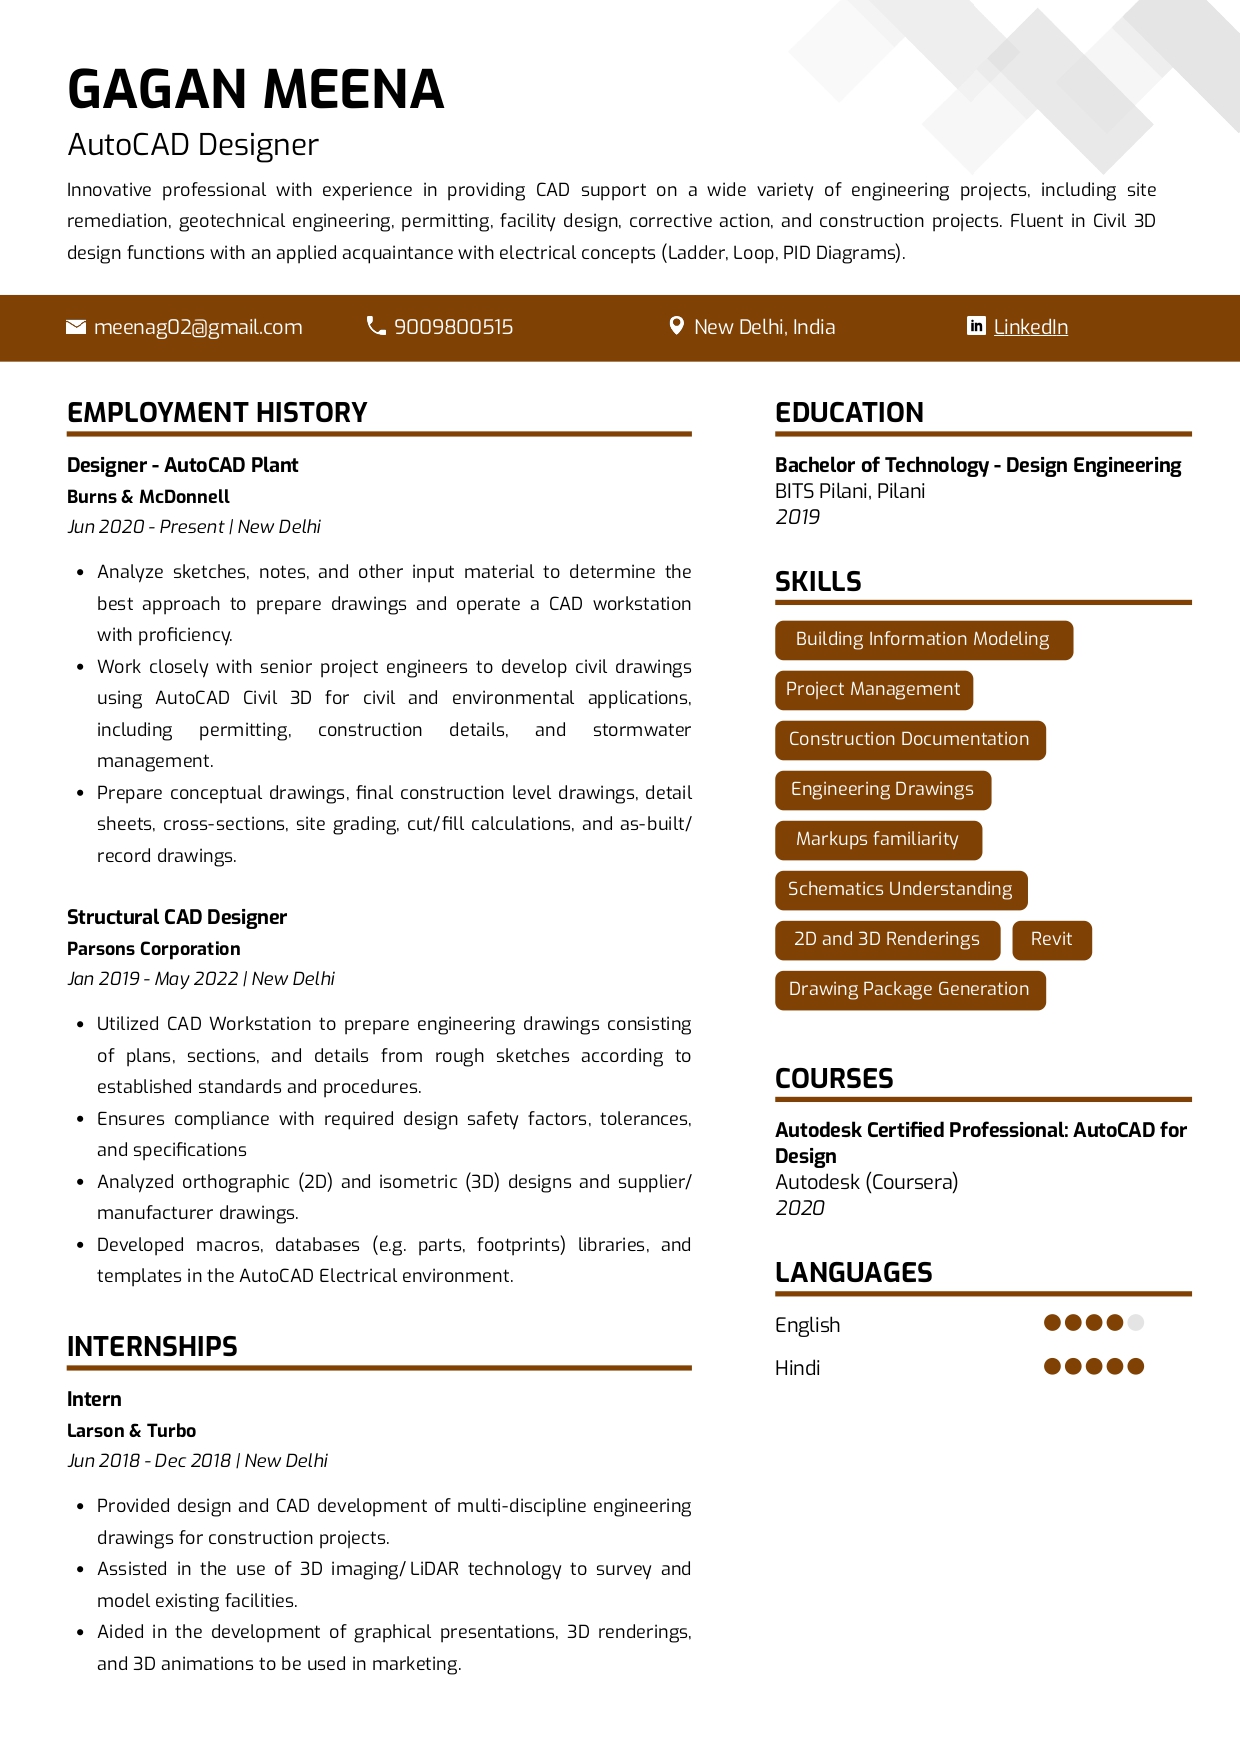 Resume of AutoCAD Designer